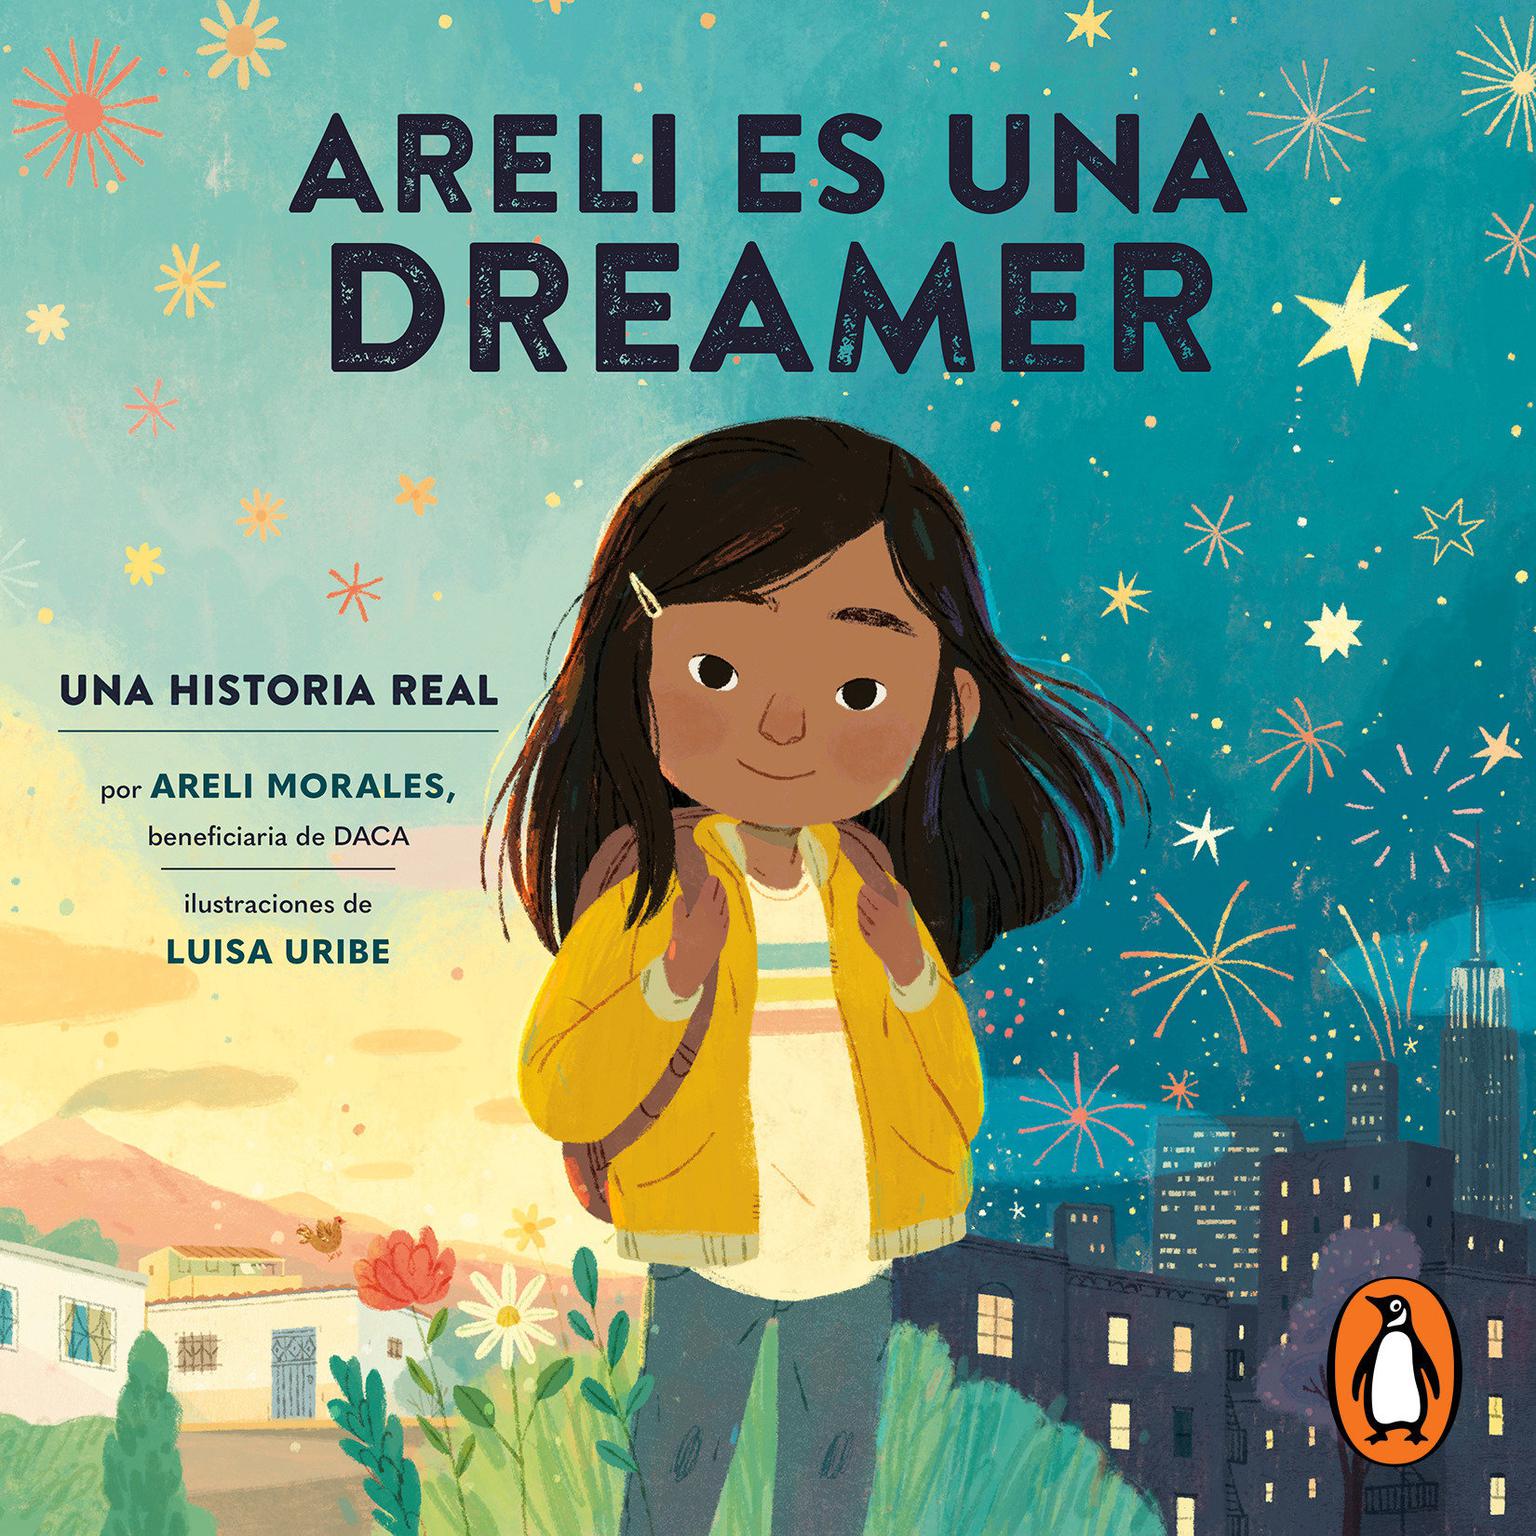 Areli Es Una Dreamer (Areli Is a Dreamer Spanish Edition): Una Historia Real por Areli Morales, Beneficiaria de DACA Audiobook, by Areli Morales